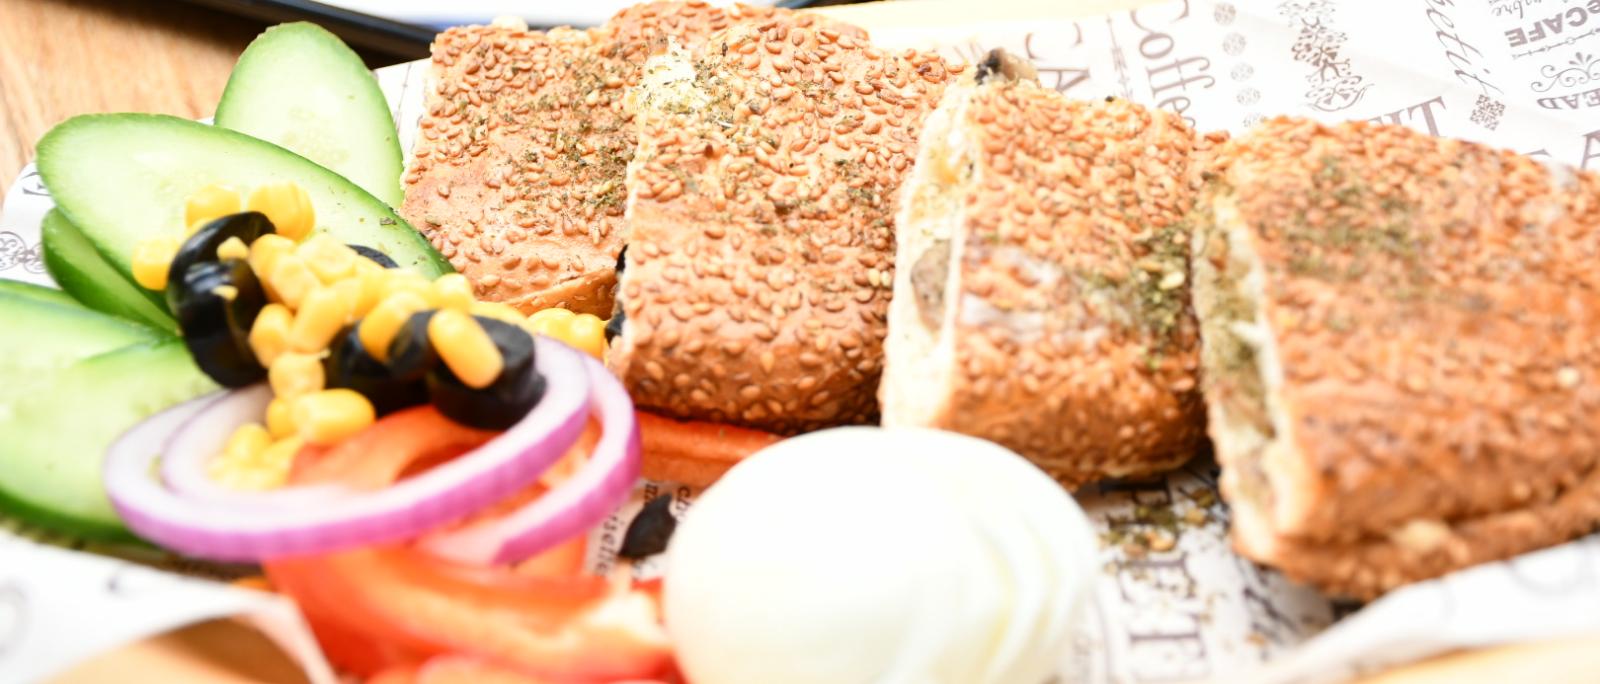 ستار توست بيافا - 4 ساندويشات توست مع كولا وسلطات فقط بـ 116 شيكل 